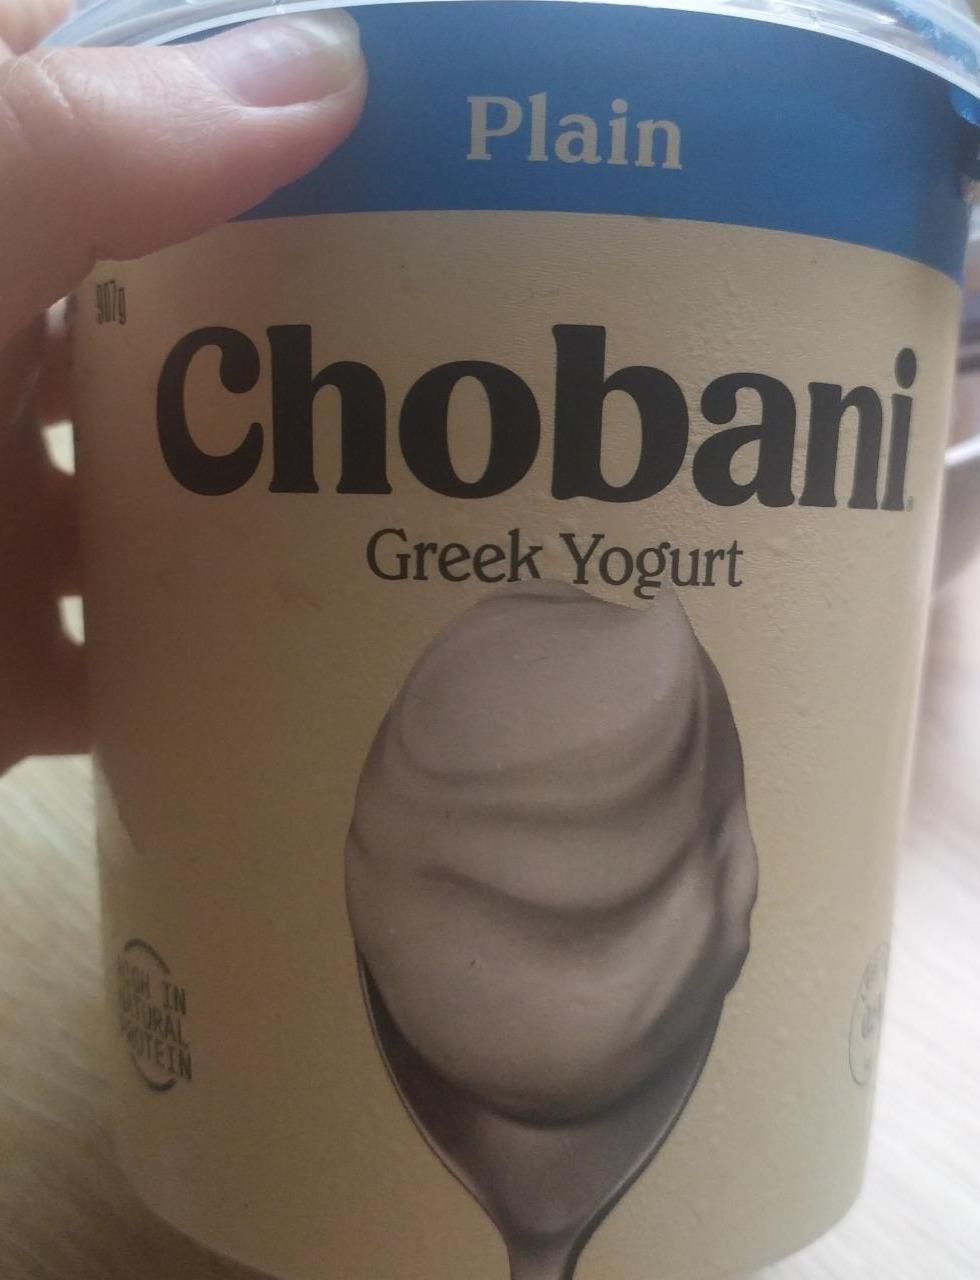 Fotografie - Plain Plain Greek Yogurt Chobani